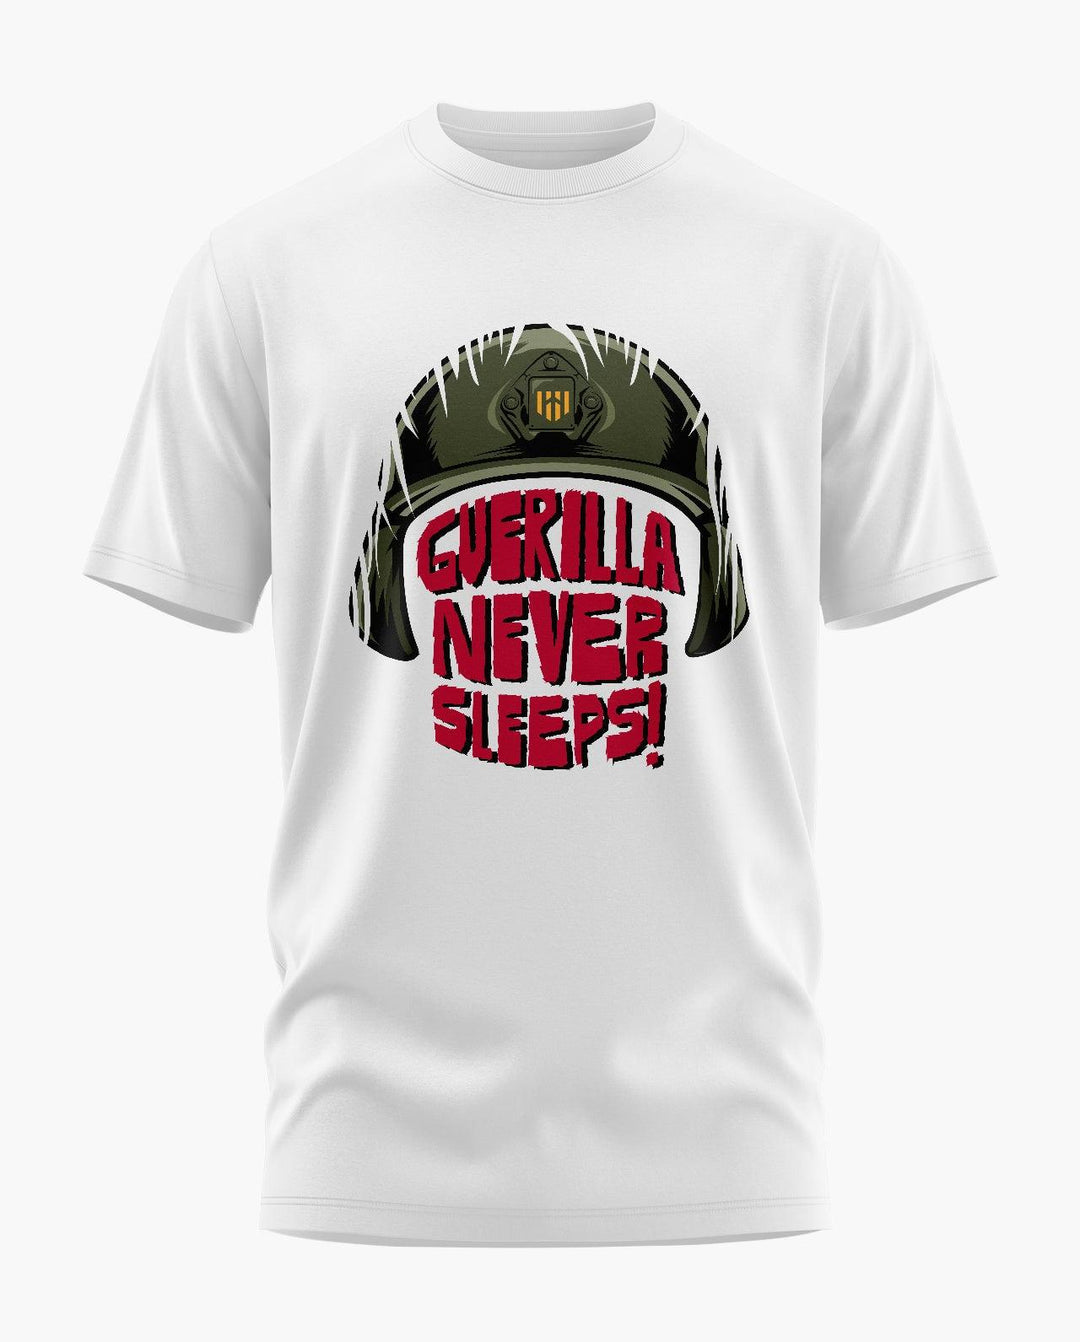 Guerilla Never Sleeps T-Shirt - Aero Armour